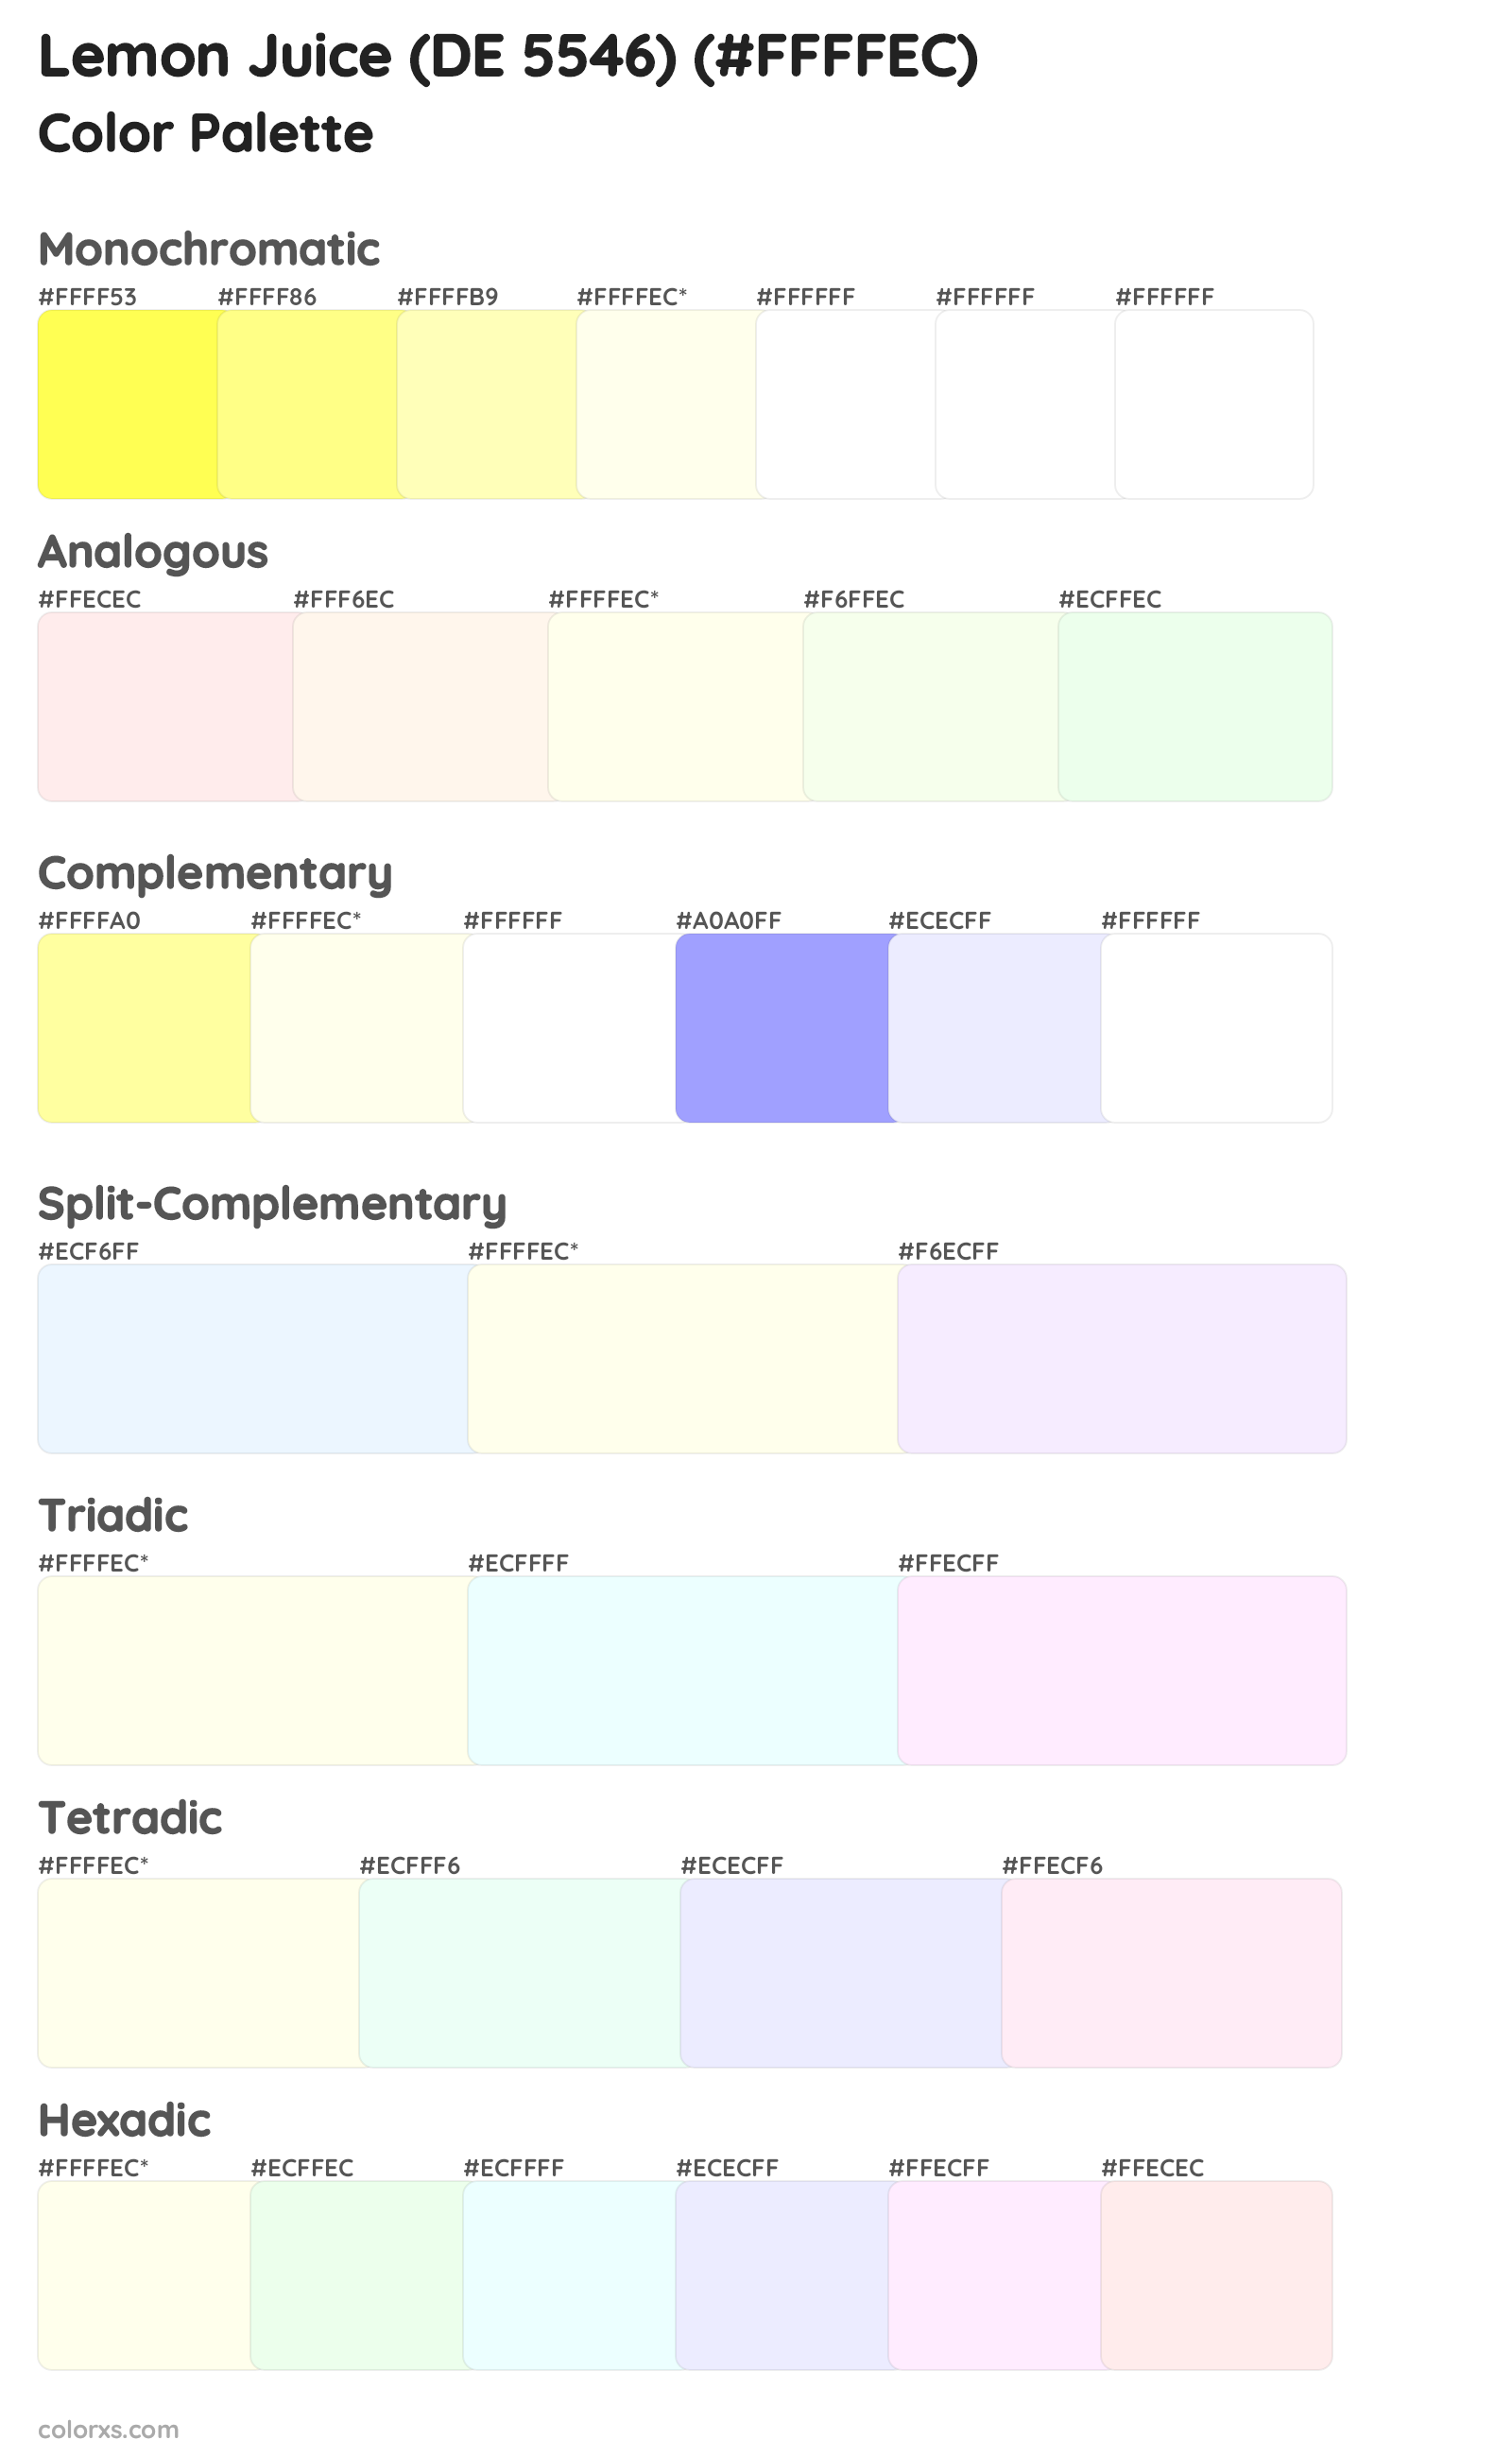 Lemon Juice (DE 5546) Color Scheme Palettes